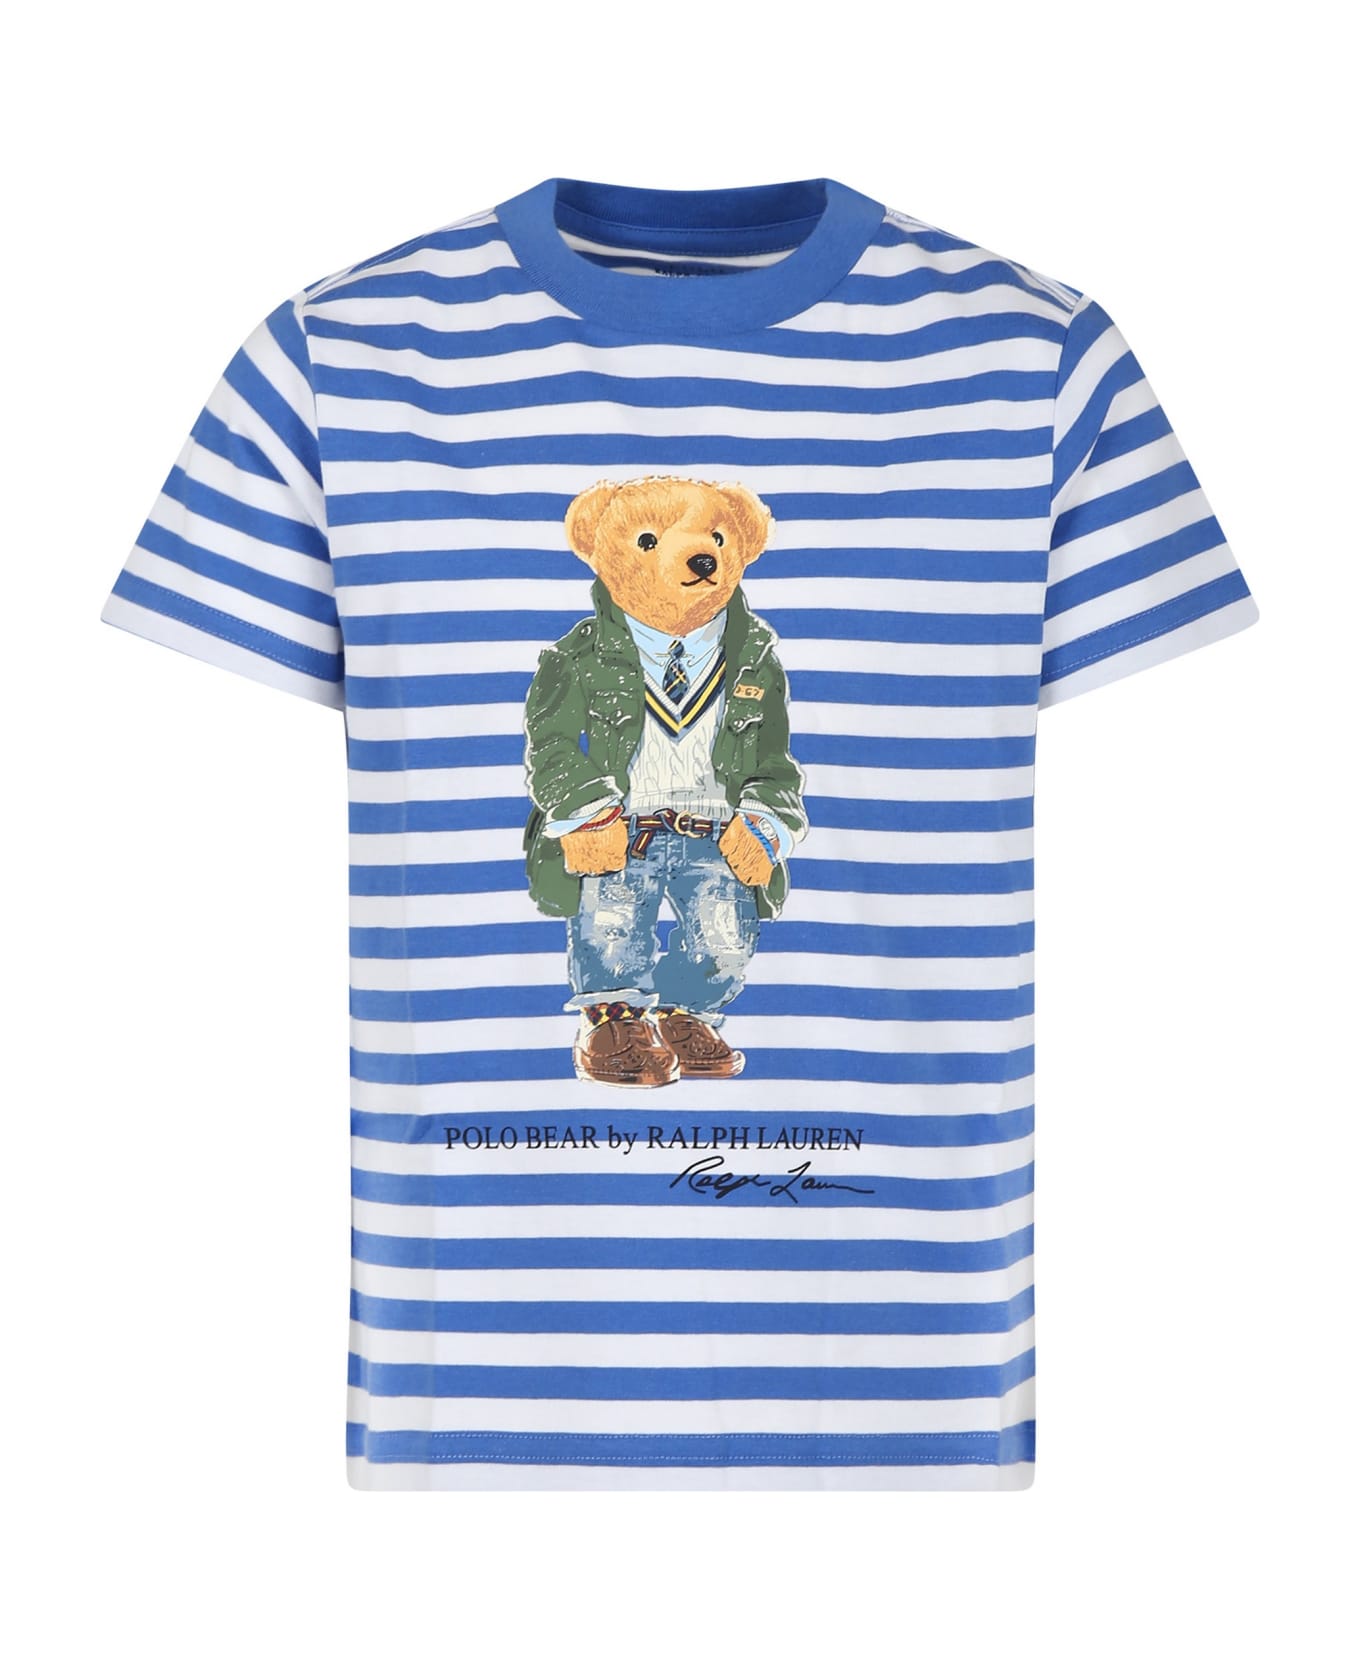 Ralph Lauren Light Blue T-shirt For Boy With Polo Bear - Light Blue